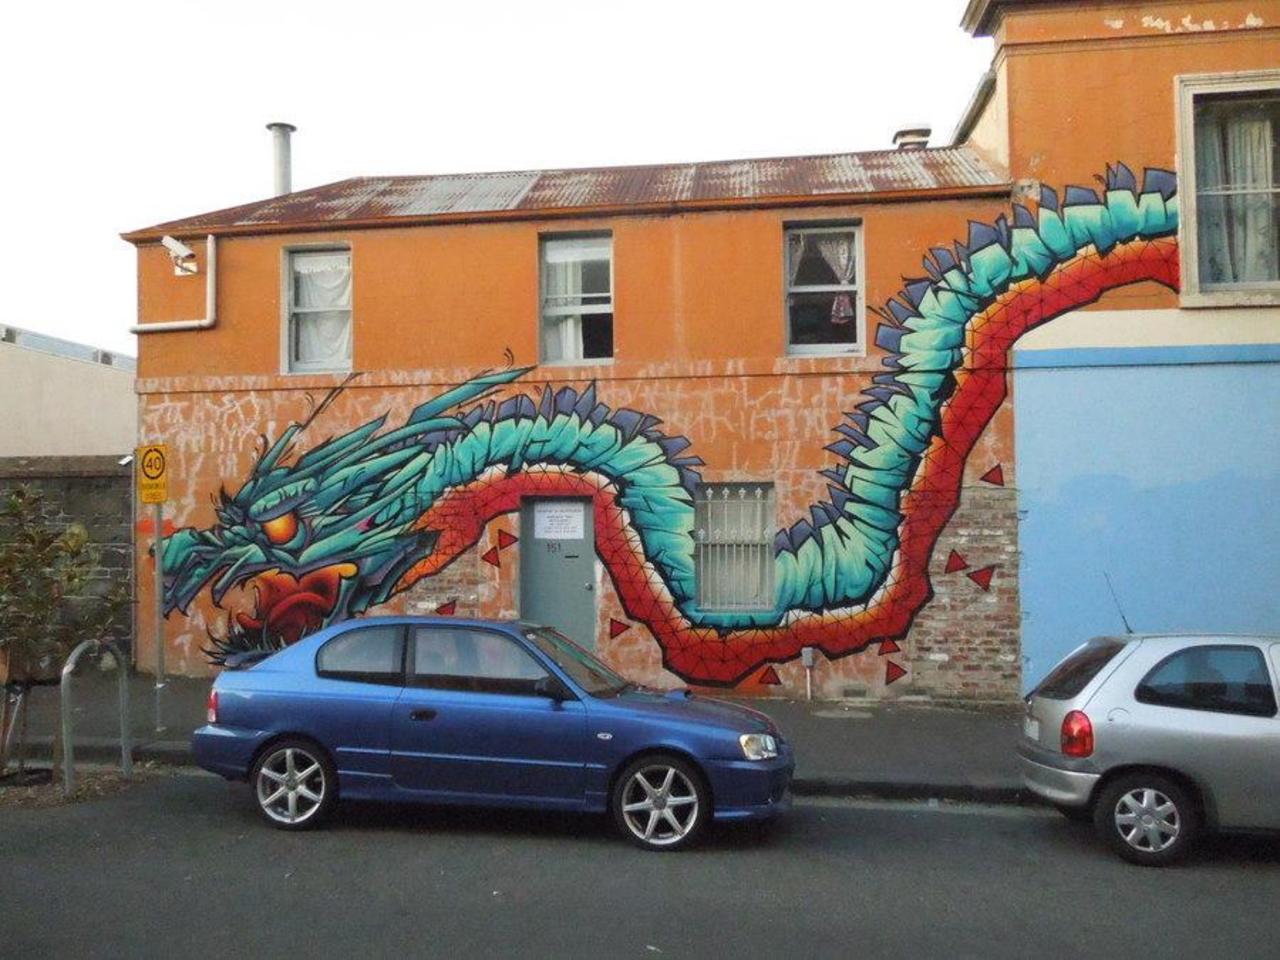 Streetart by Putos in Australia (http://globalstreetart.com/putospaint  )

#streetart #urbanart #mural #art #graffiti http://t.co/Fkzm4q8zvu